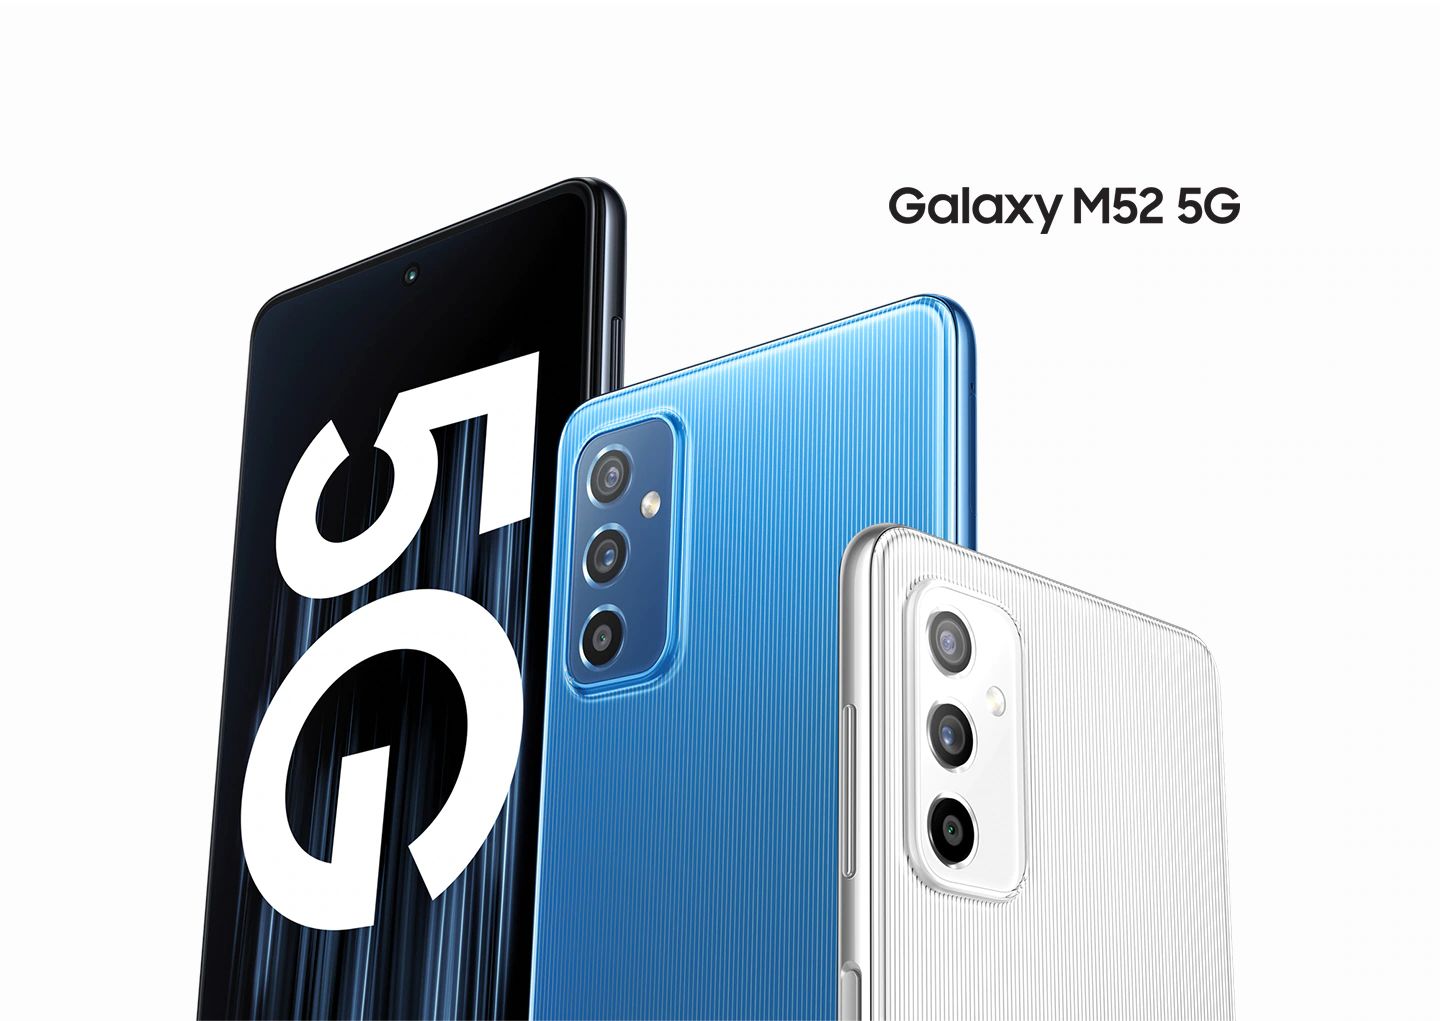 Yeni Galaxy M52 5G’nin şıklığıyla dikkat çeken ince tasarımını elinizle kavrayın. Sadece 7,4mm’lik kalınlığıyla rahat bir tutuş sunarken yuvarlak kenarları ekranda kolayca gezinmenizi sağlar. İnce çizgilerden oluşan desenli yüzeyi farklı açılardan hoş bir görüntü yaratır. 